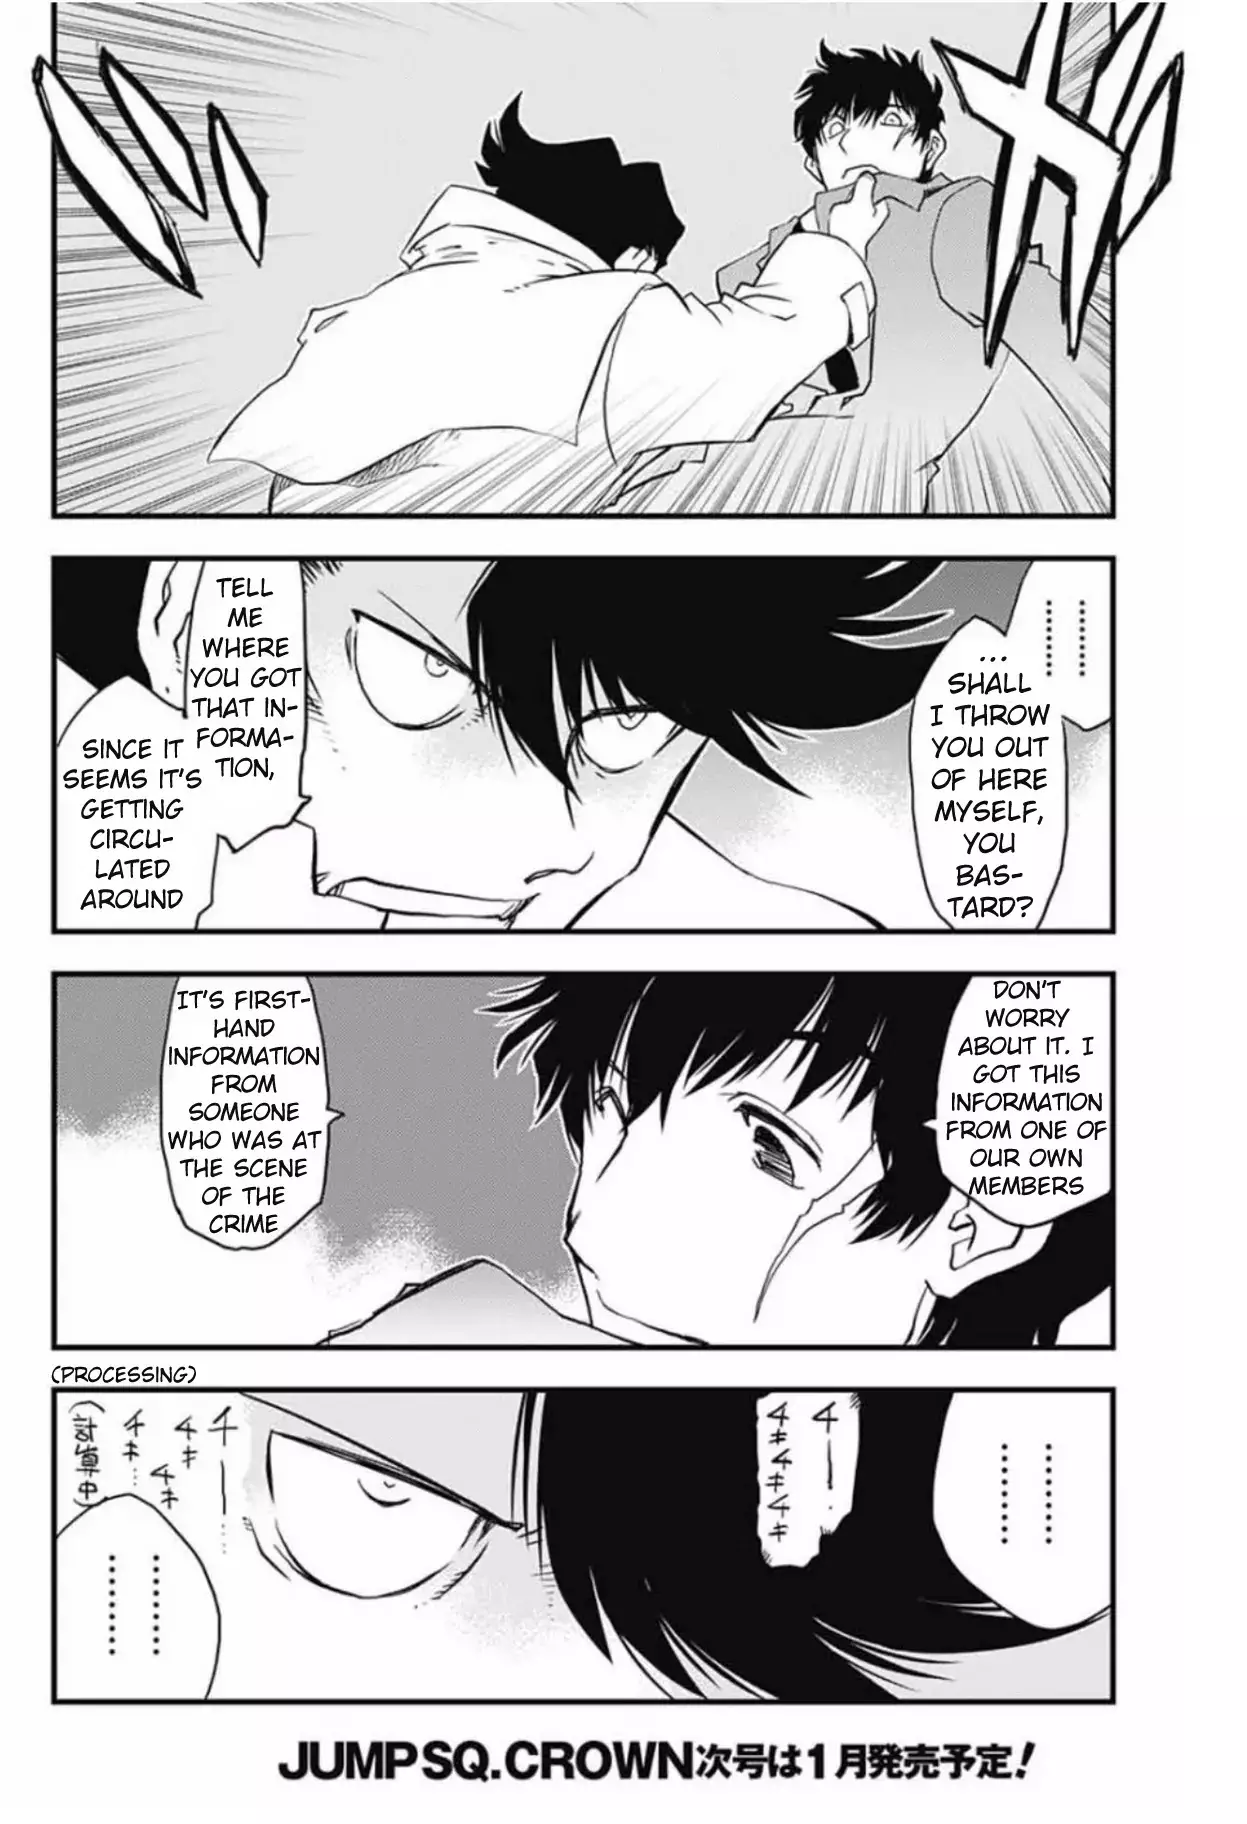 Kekkai Sensen - Back 2 Back - 8 page 16